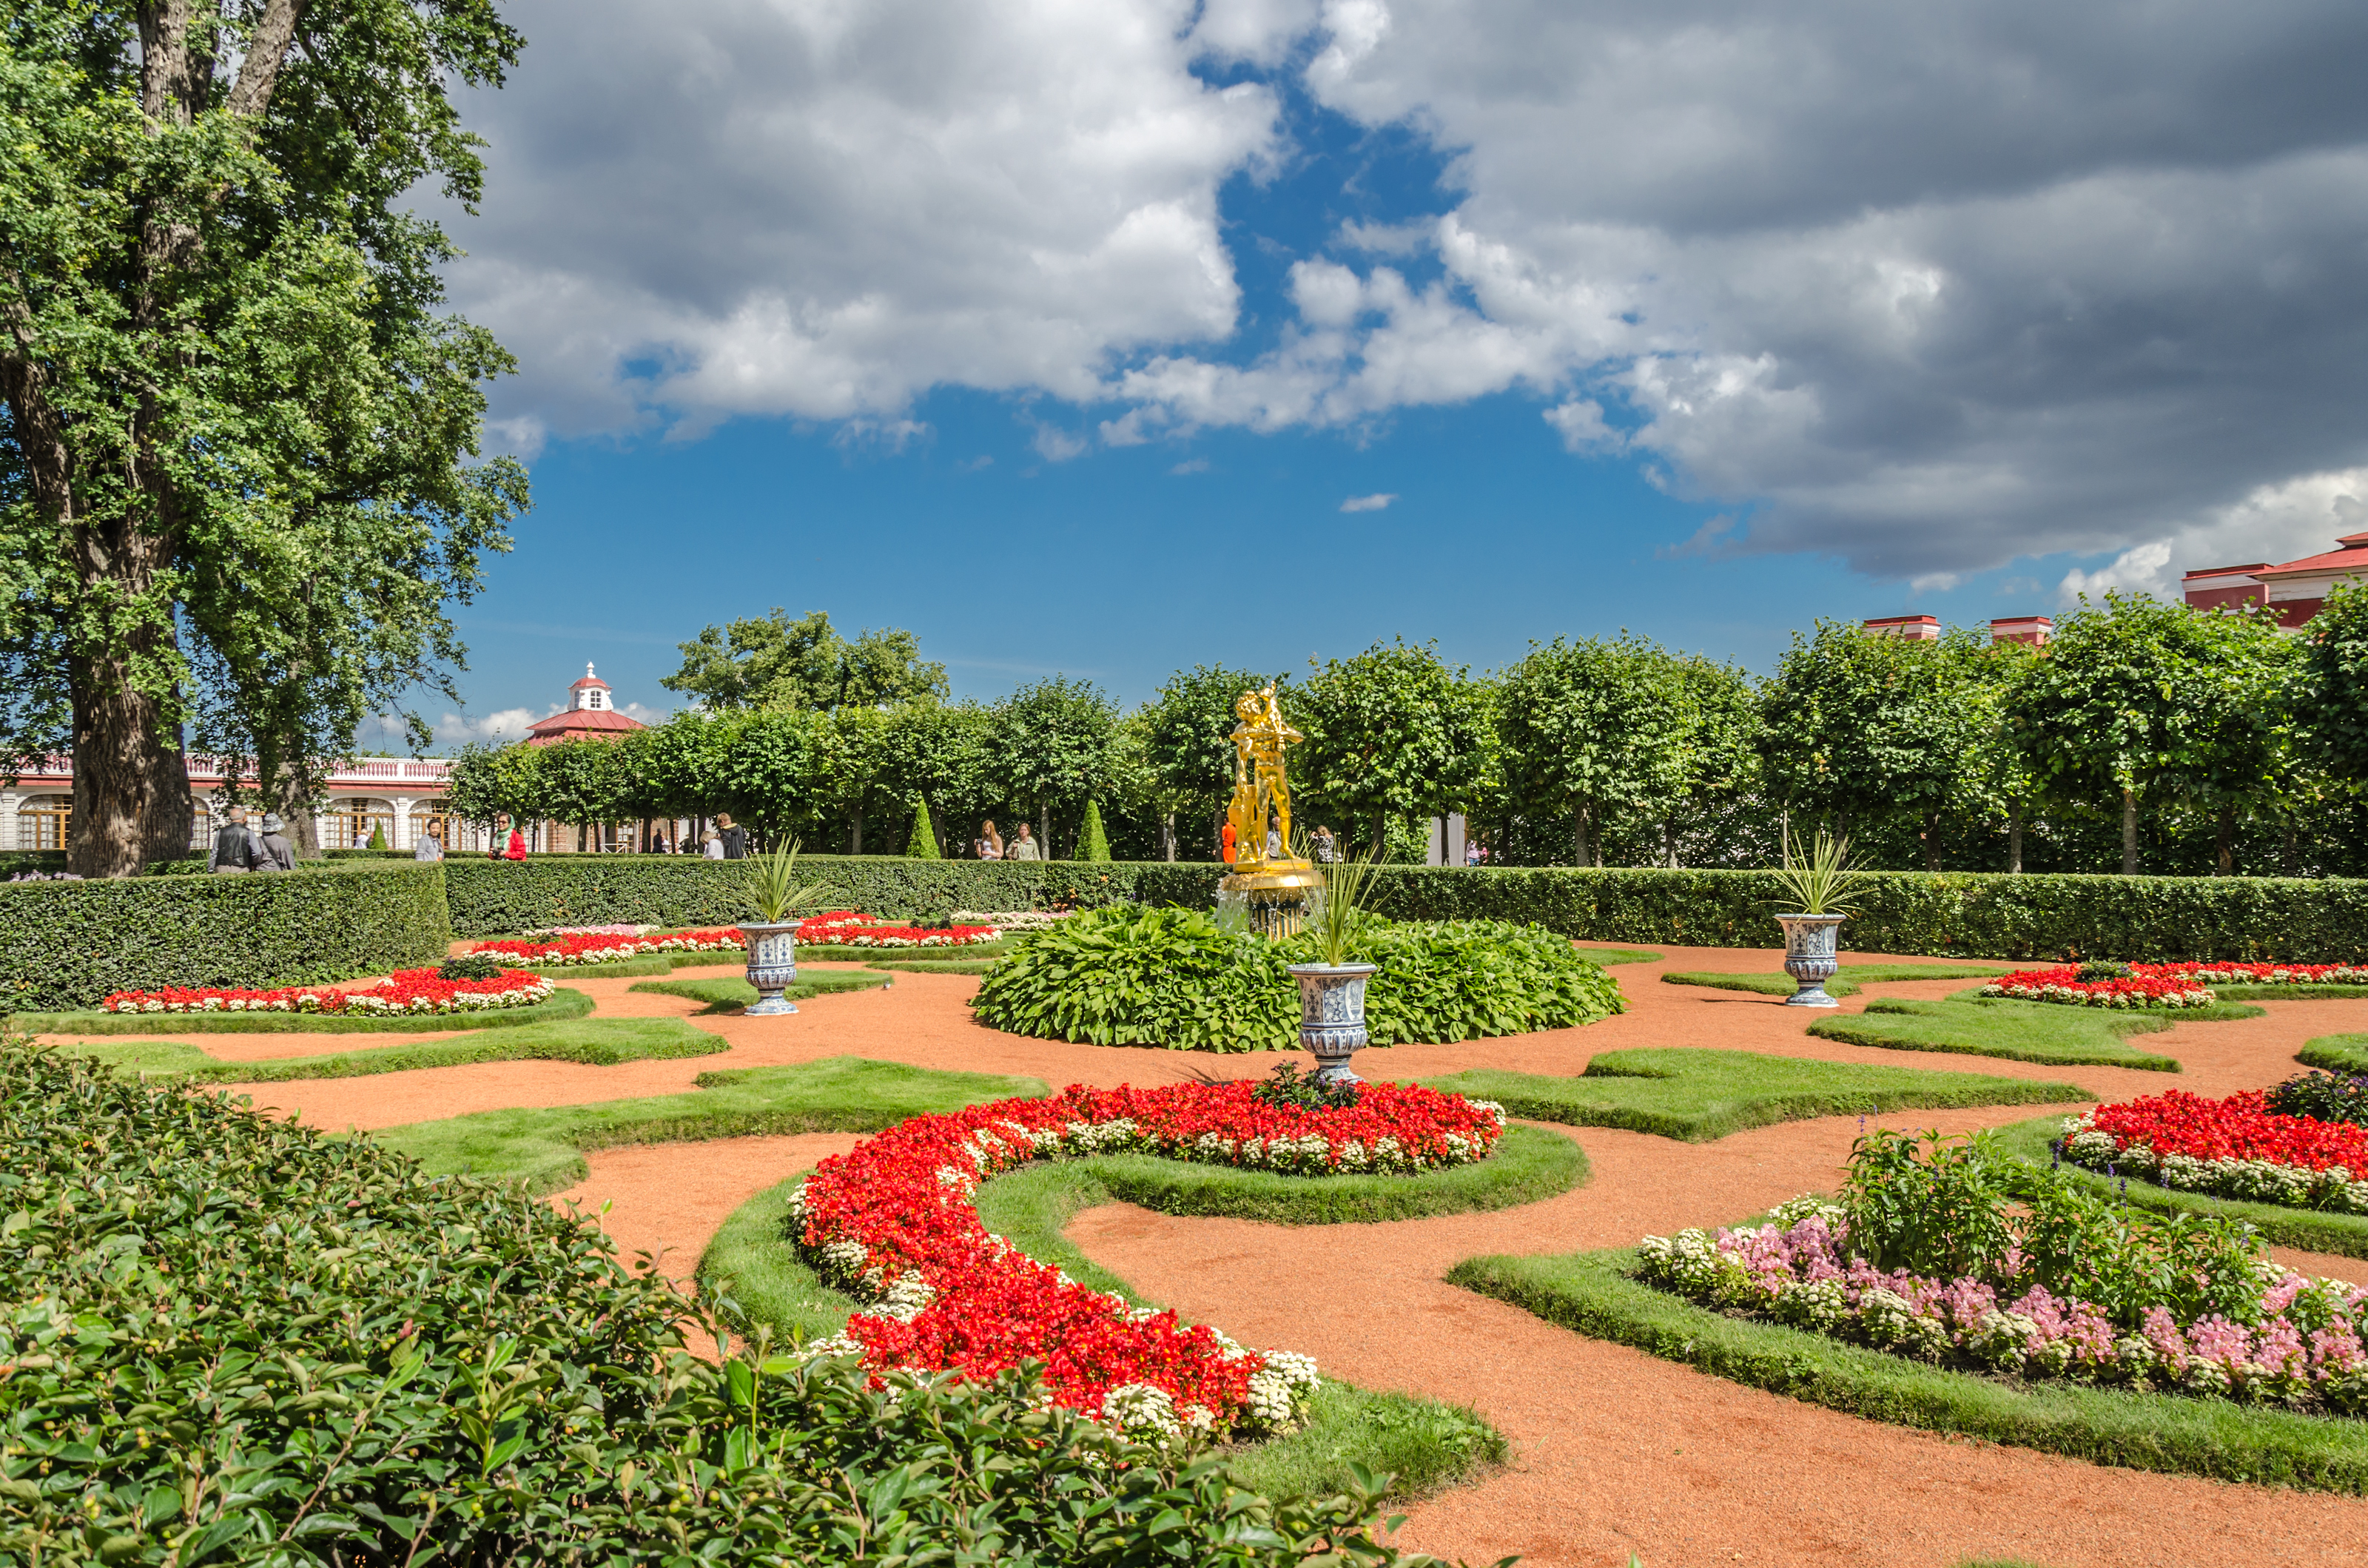 Monplaisir garden in the Lower Park of Peterhof 01